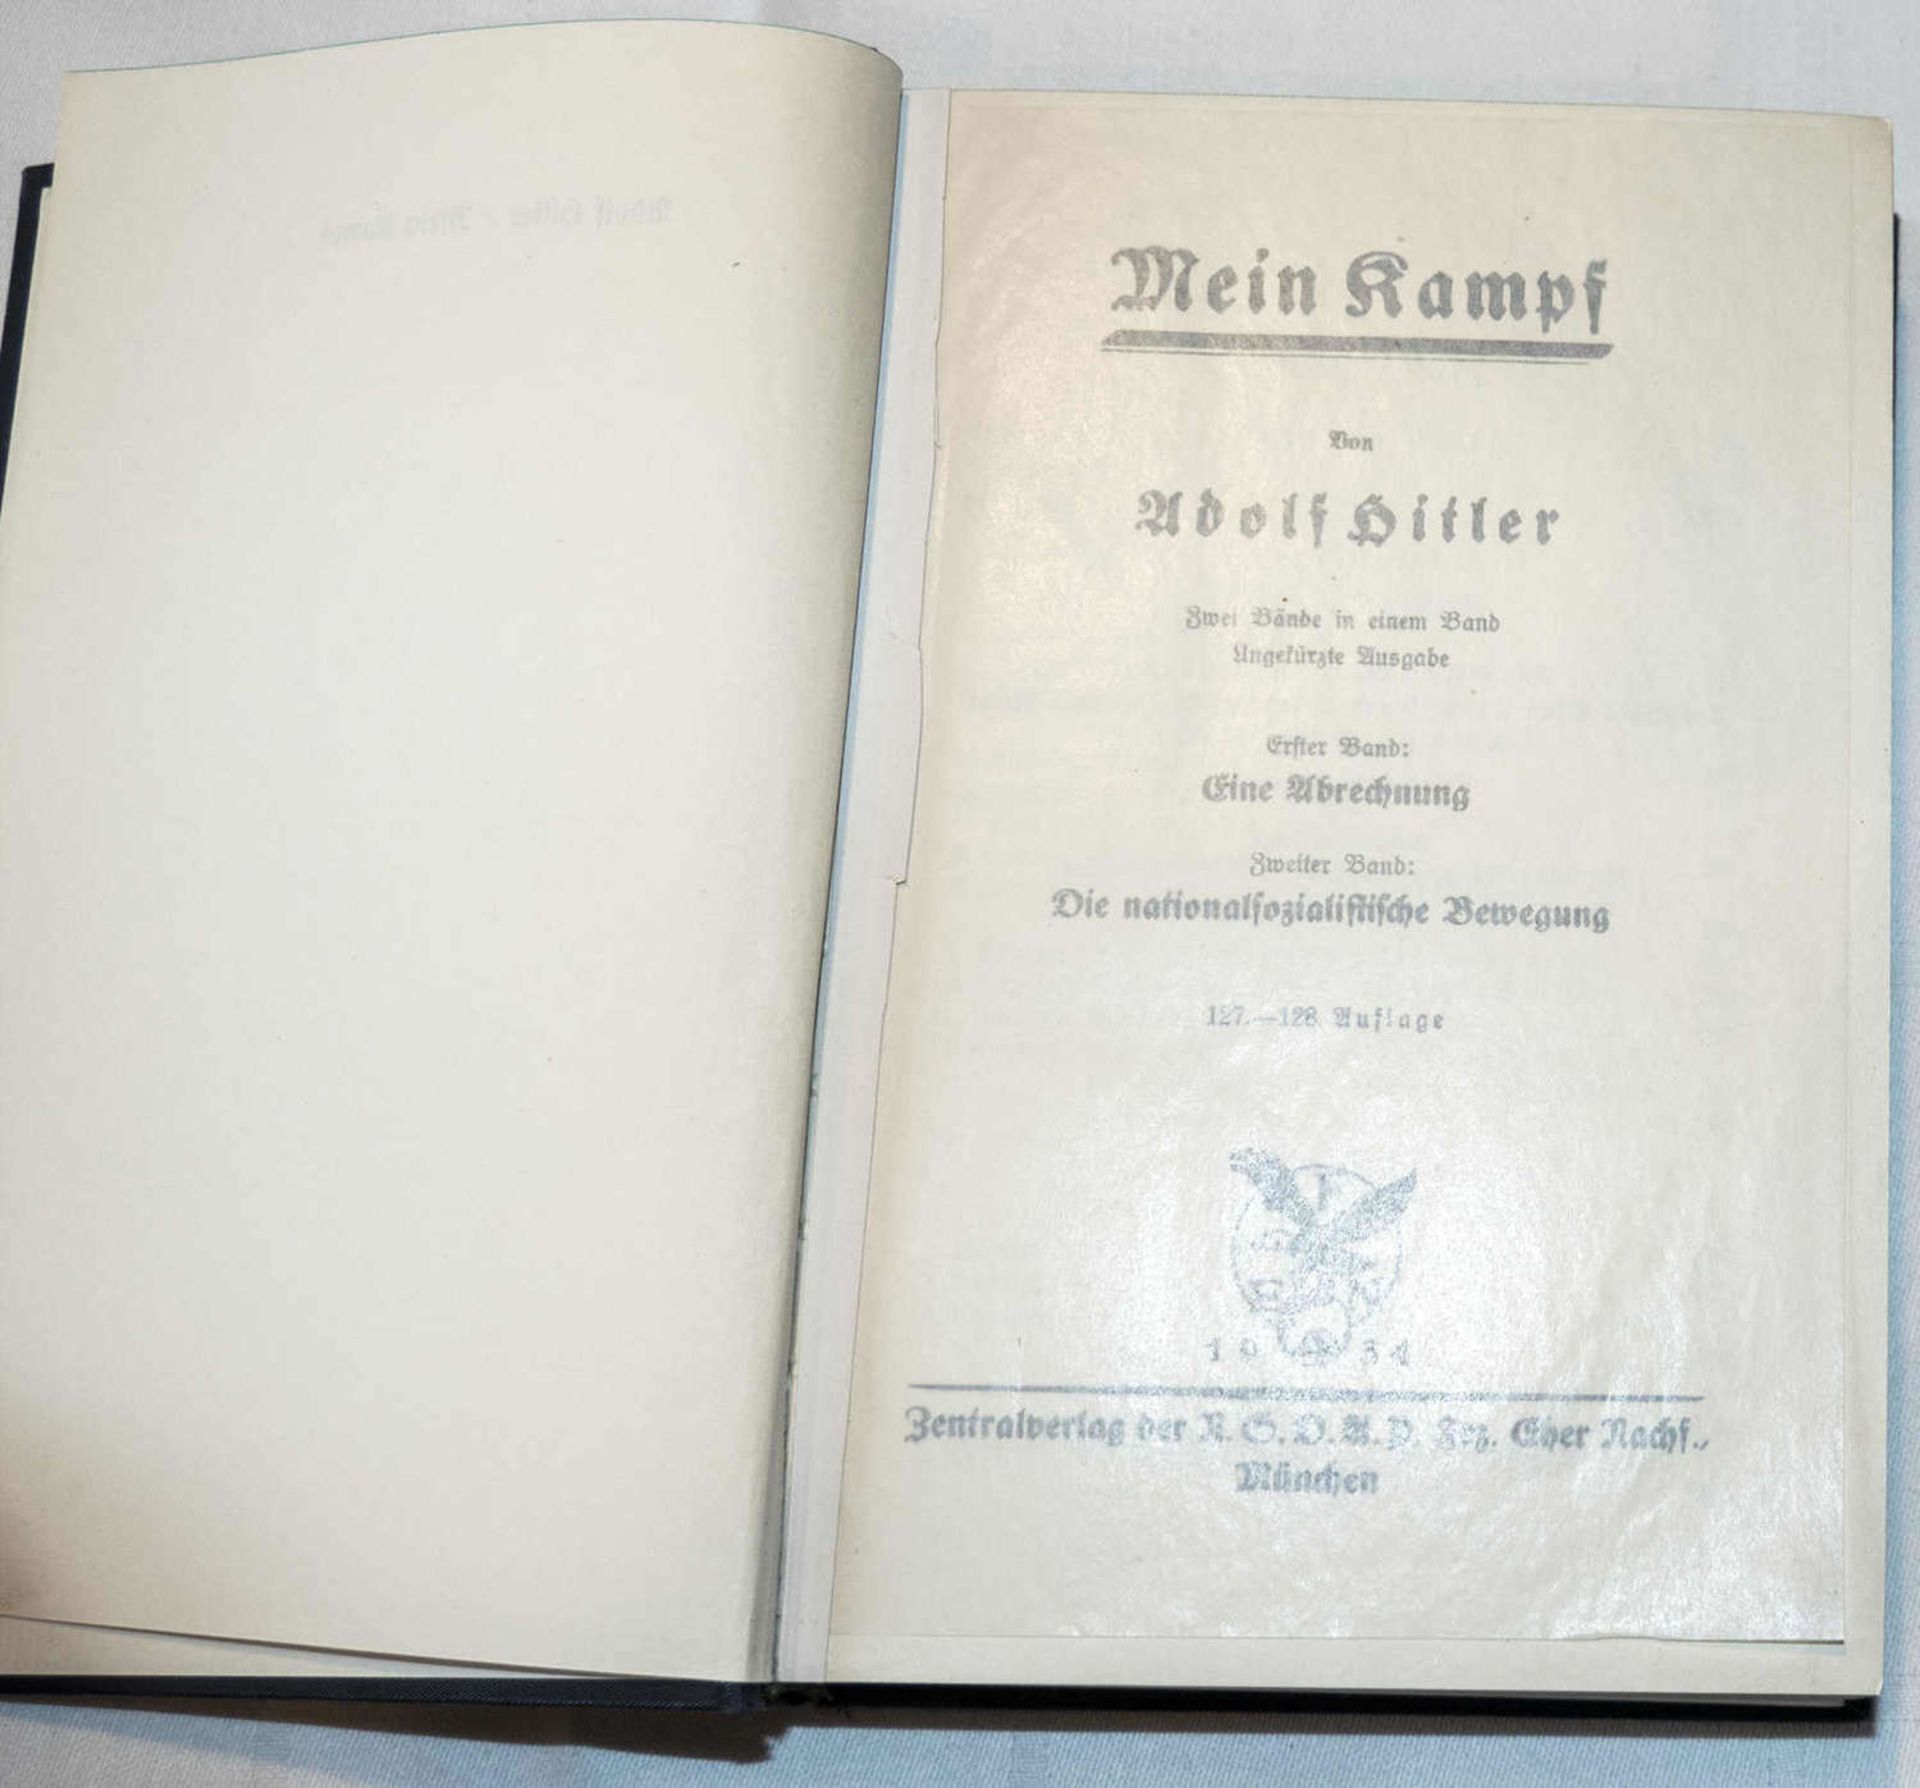 "Mein Kampf", blaue Gesamtausgabe, Band 1 + 2 von 1934. 1. Seite fehlt."Mein Kampf", blue complete - Image 3 of 3